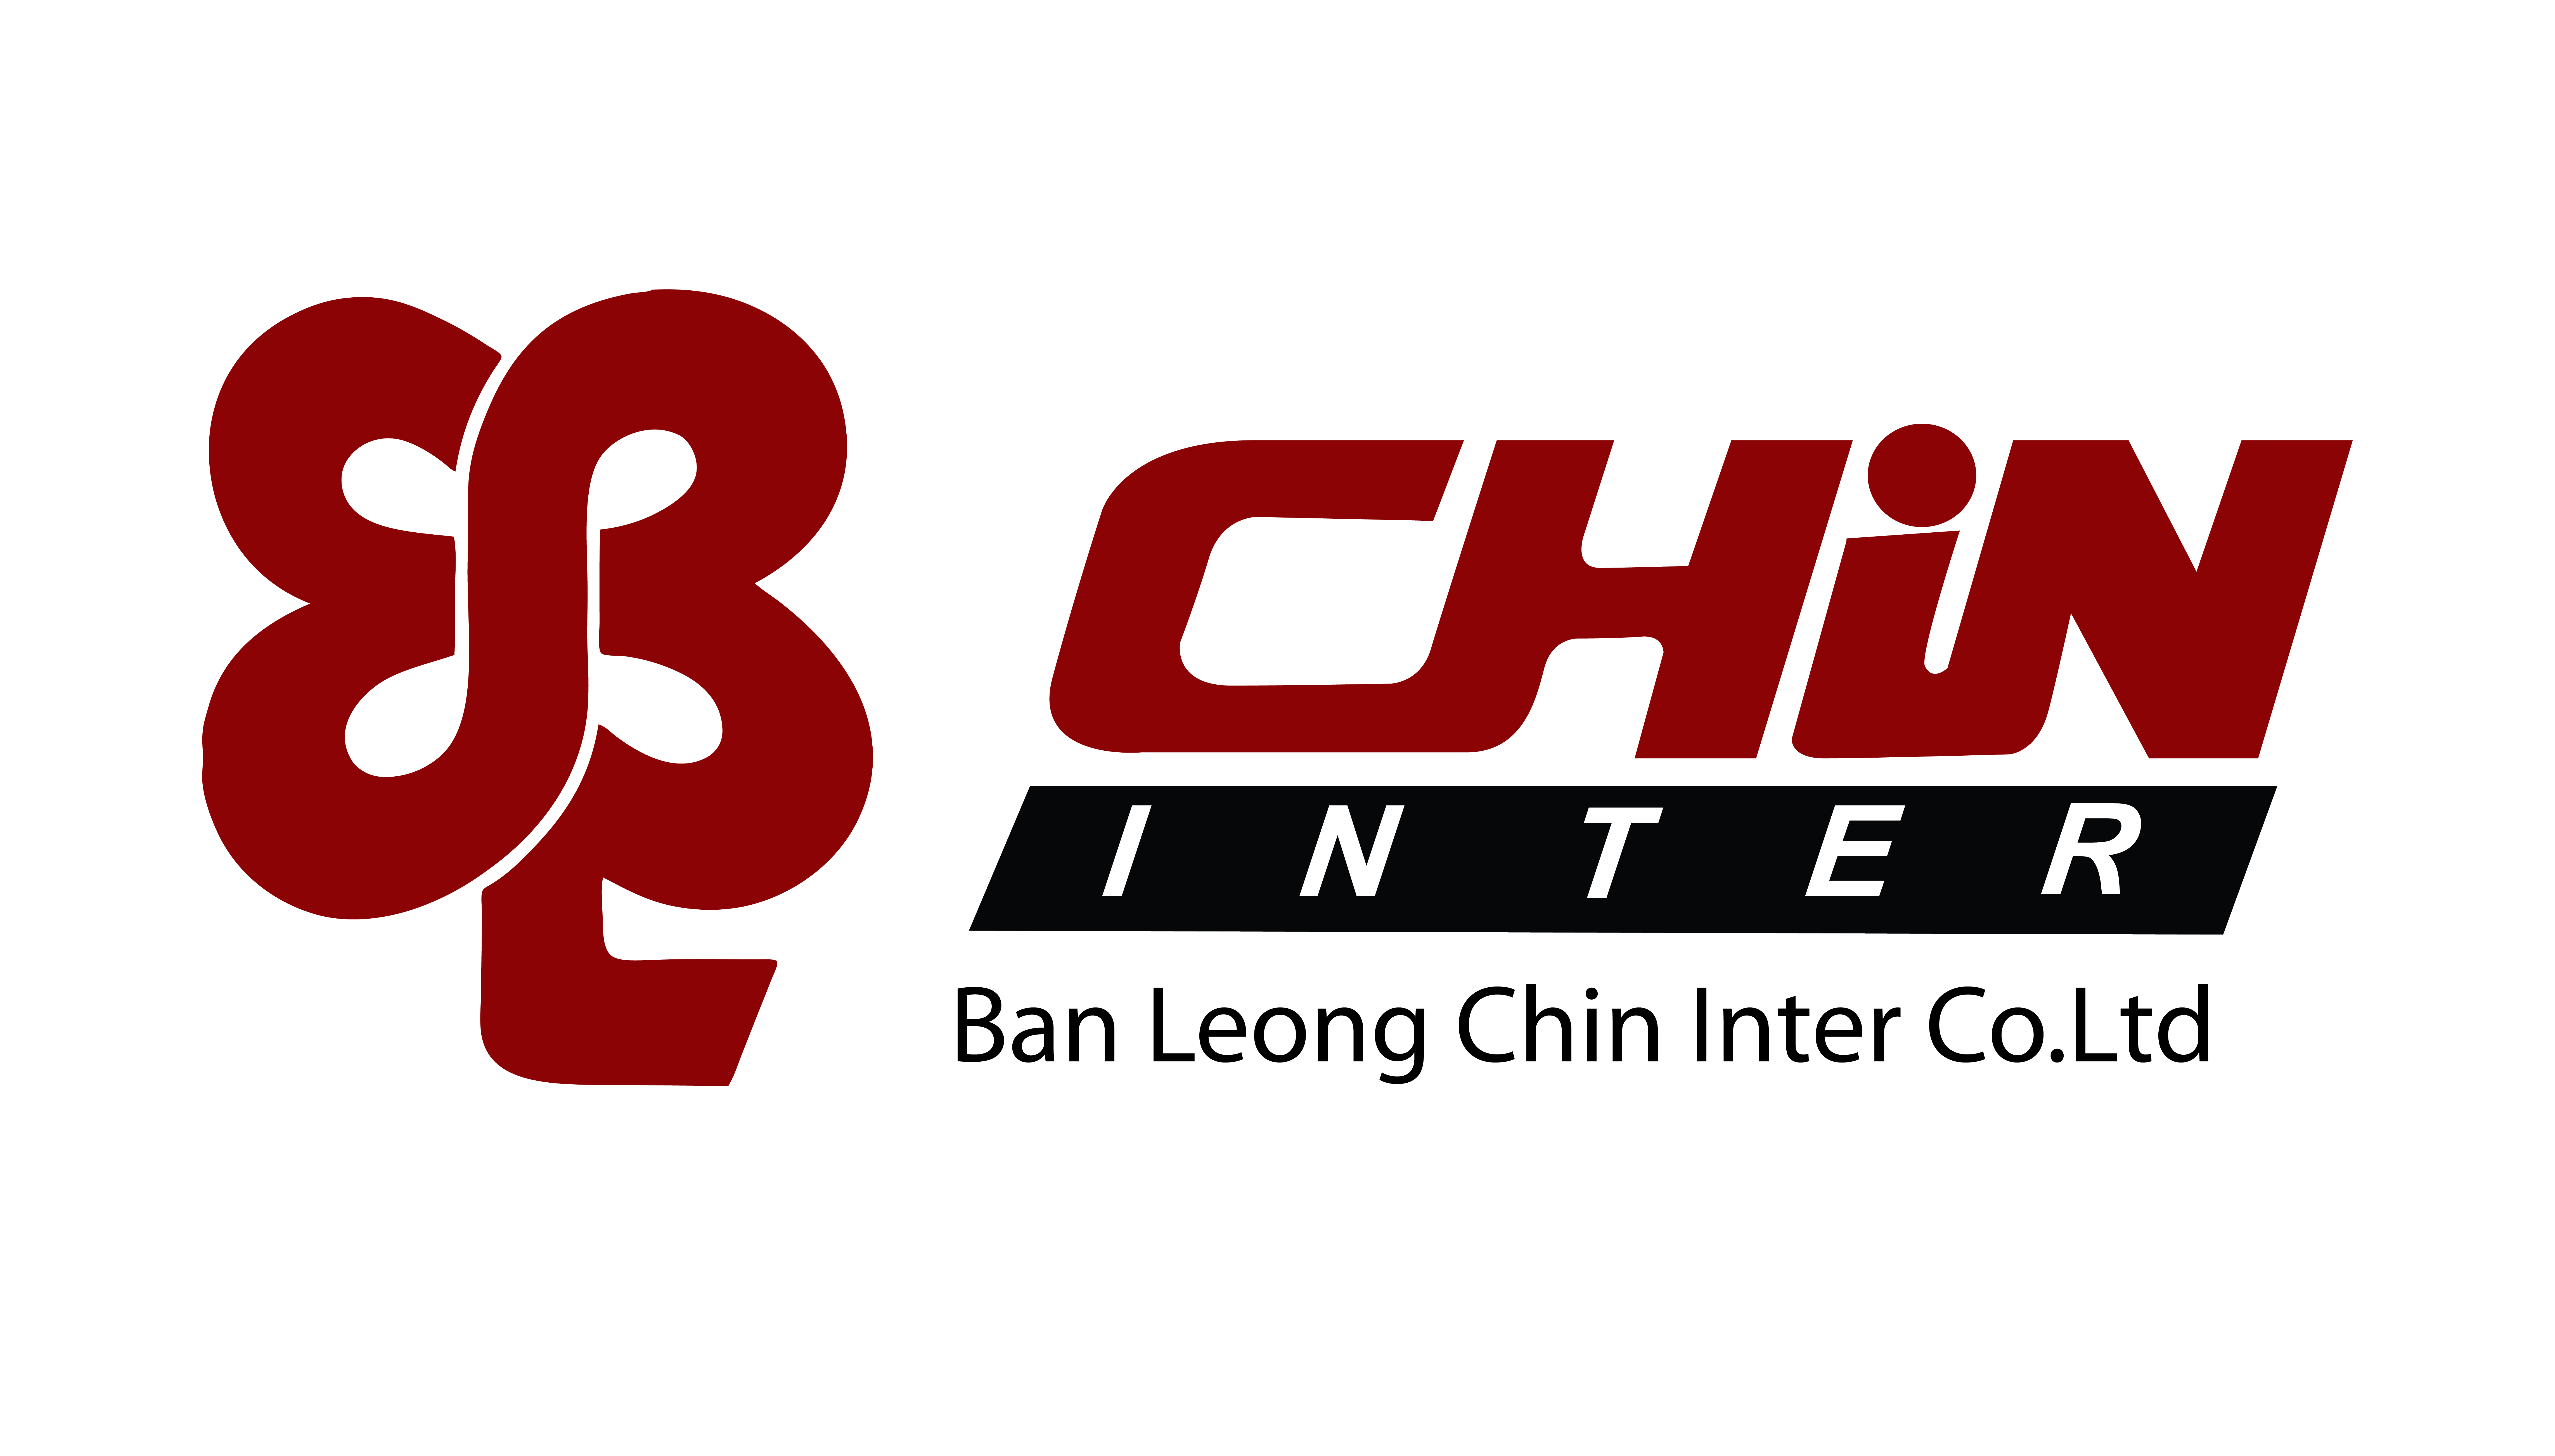 Ban Leong Chin Inter Co. Ltd.